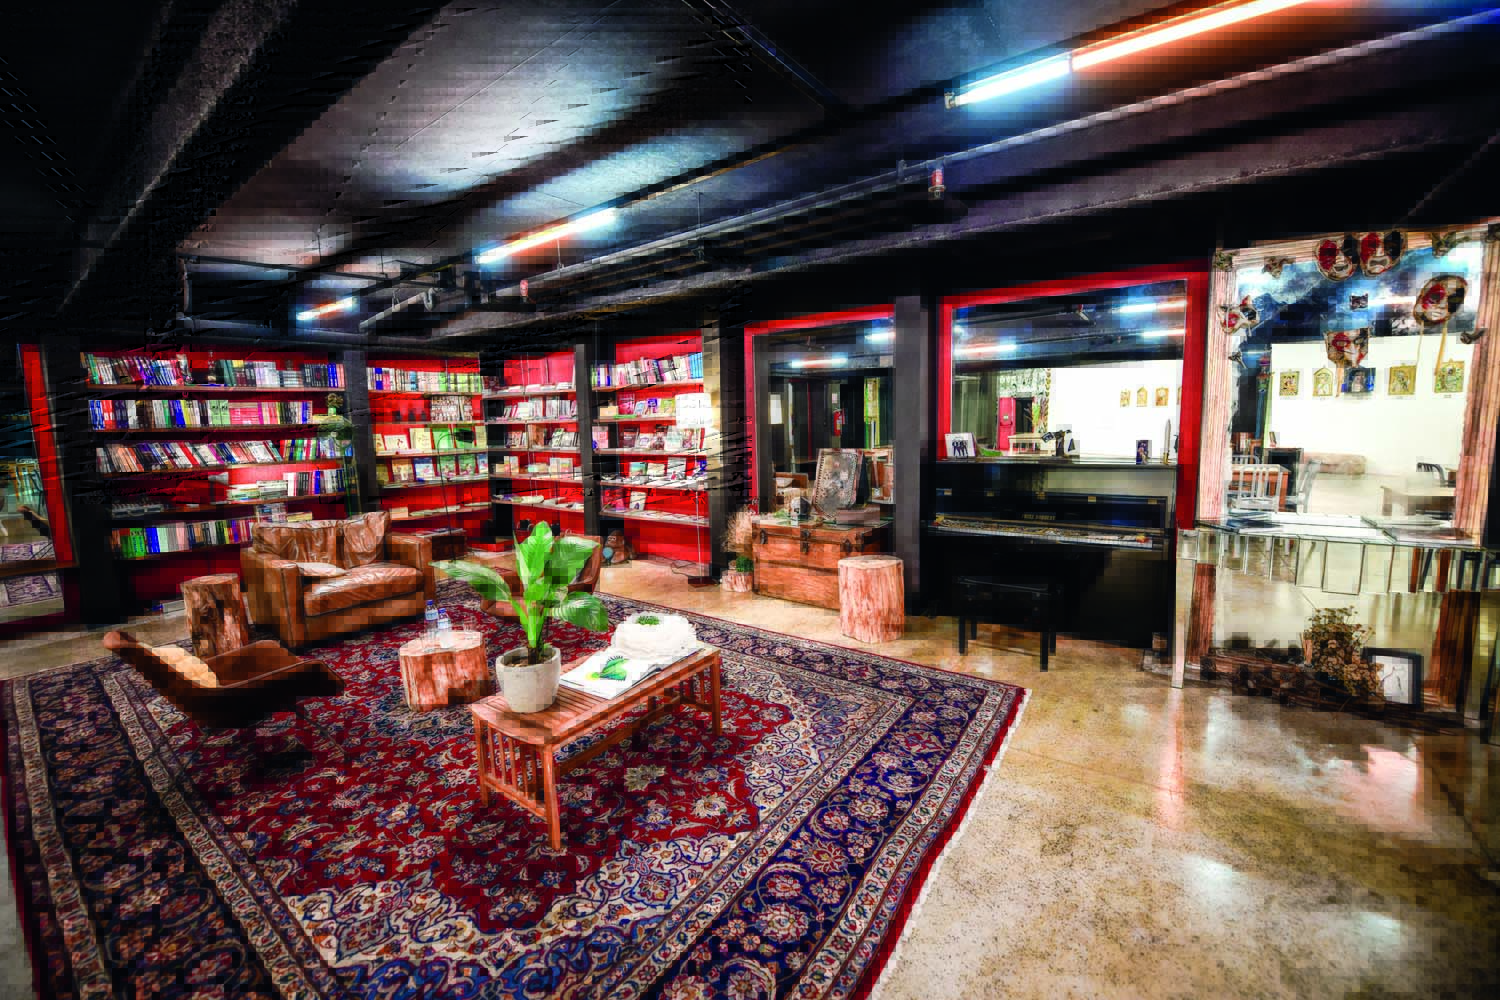 Imagem mostra interior de espaço com tapete estampado, colorido, e estantes com livros ao fundo